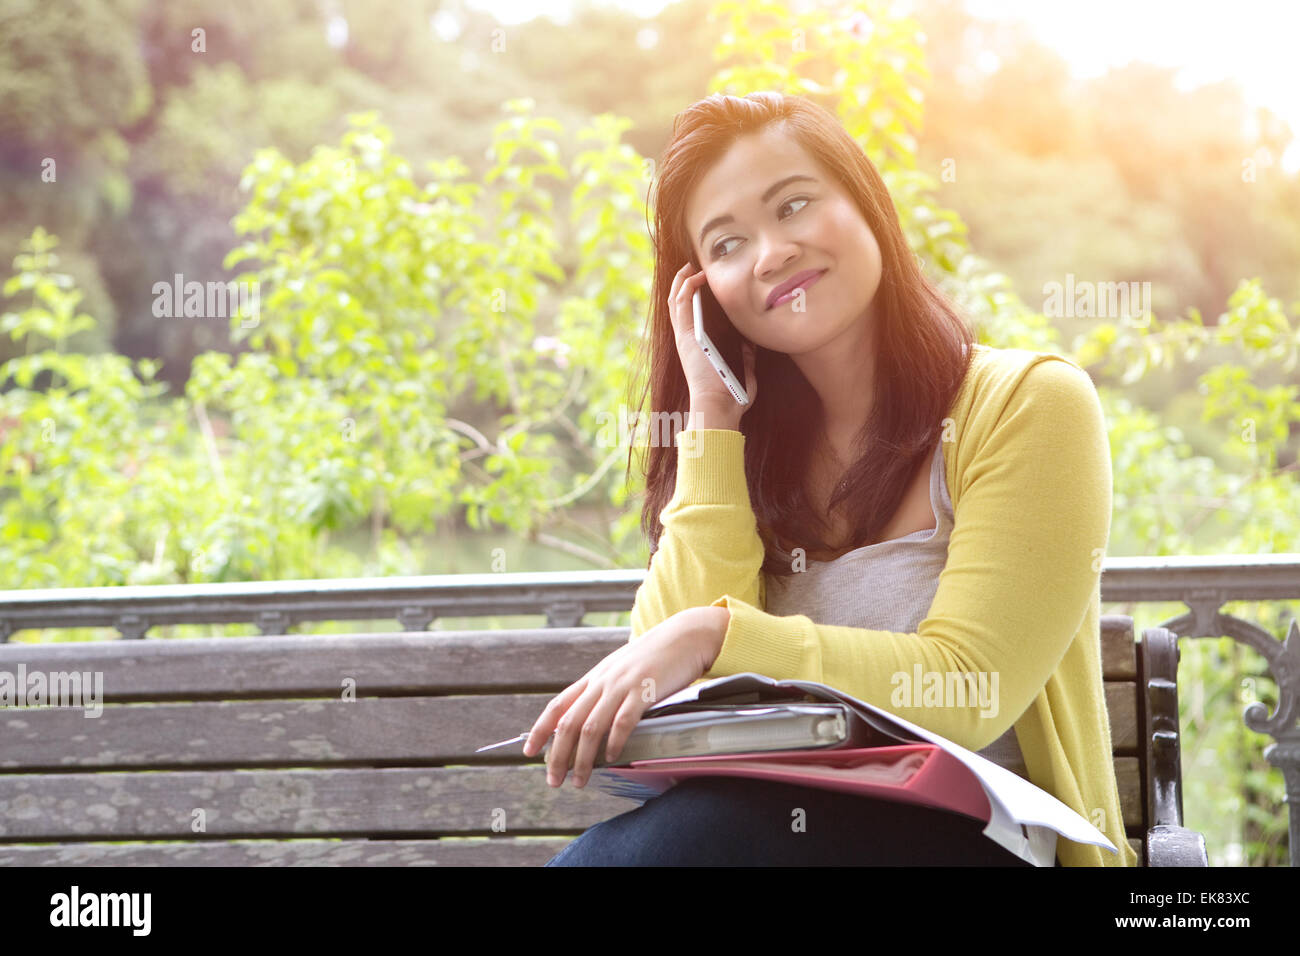 Belle jeune femme à l'université avec des livres et des dossiers sur les genoux, en utilisant son téléphone, assis sur le banc en bois dans un parc. Banque D'Images